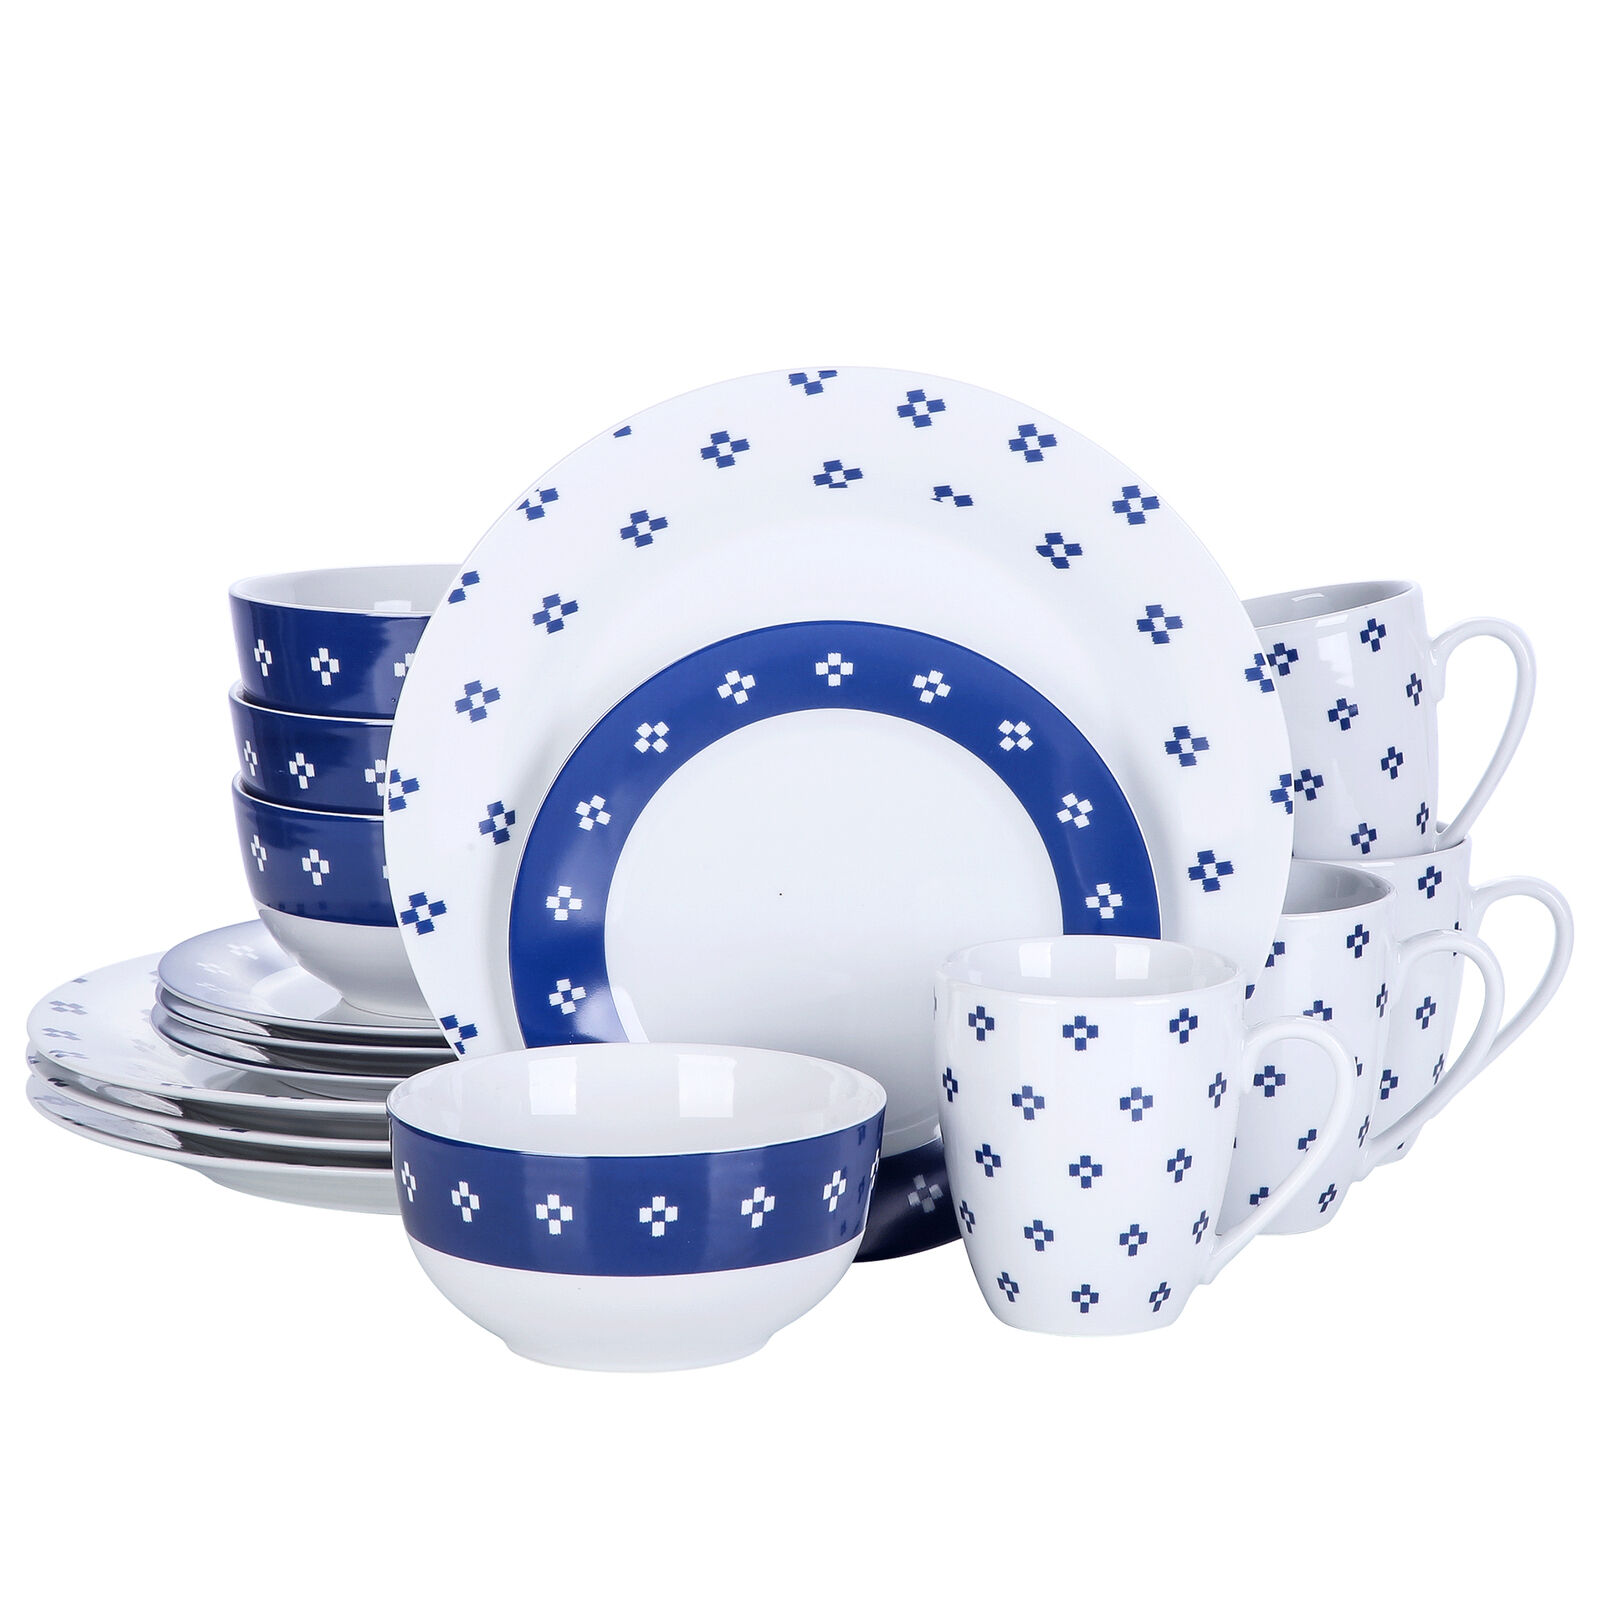 Veweet 16-piece Dinnerware Set Dinner Kitchen Porcelain Plates Bowls Mugs Round